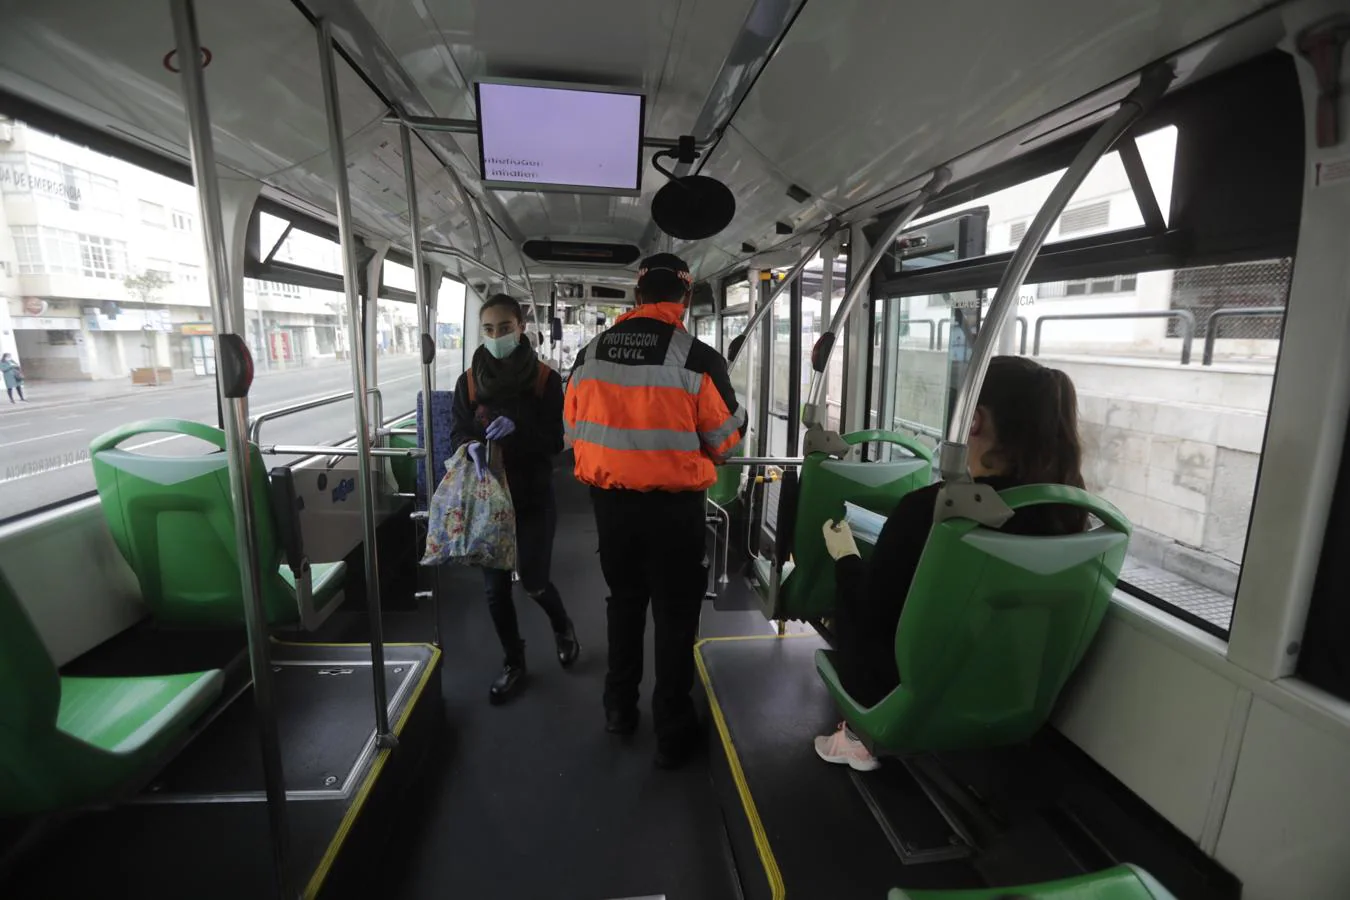 FOTOS: Reparto de mascarillas entre los usuarios del transporte público de Cádiz